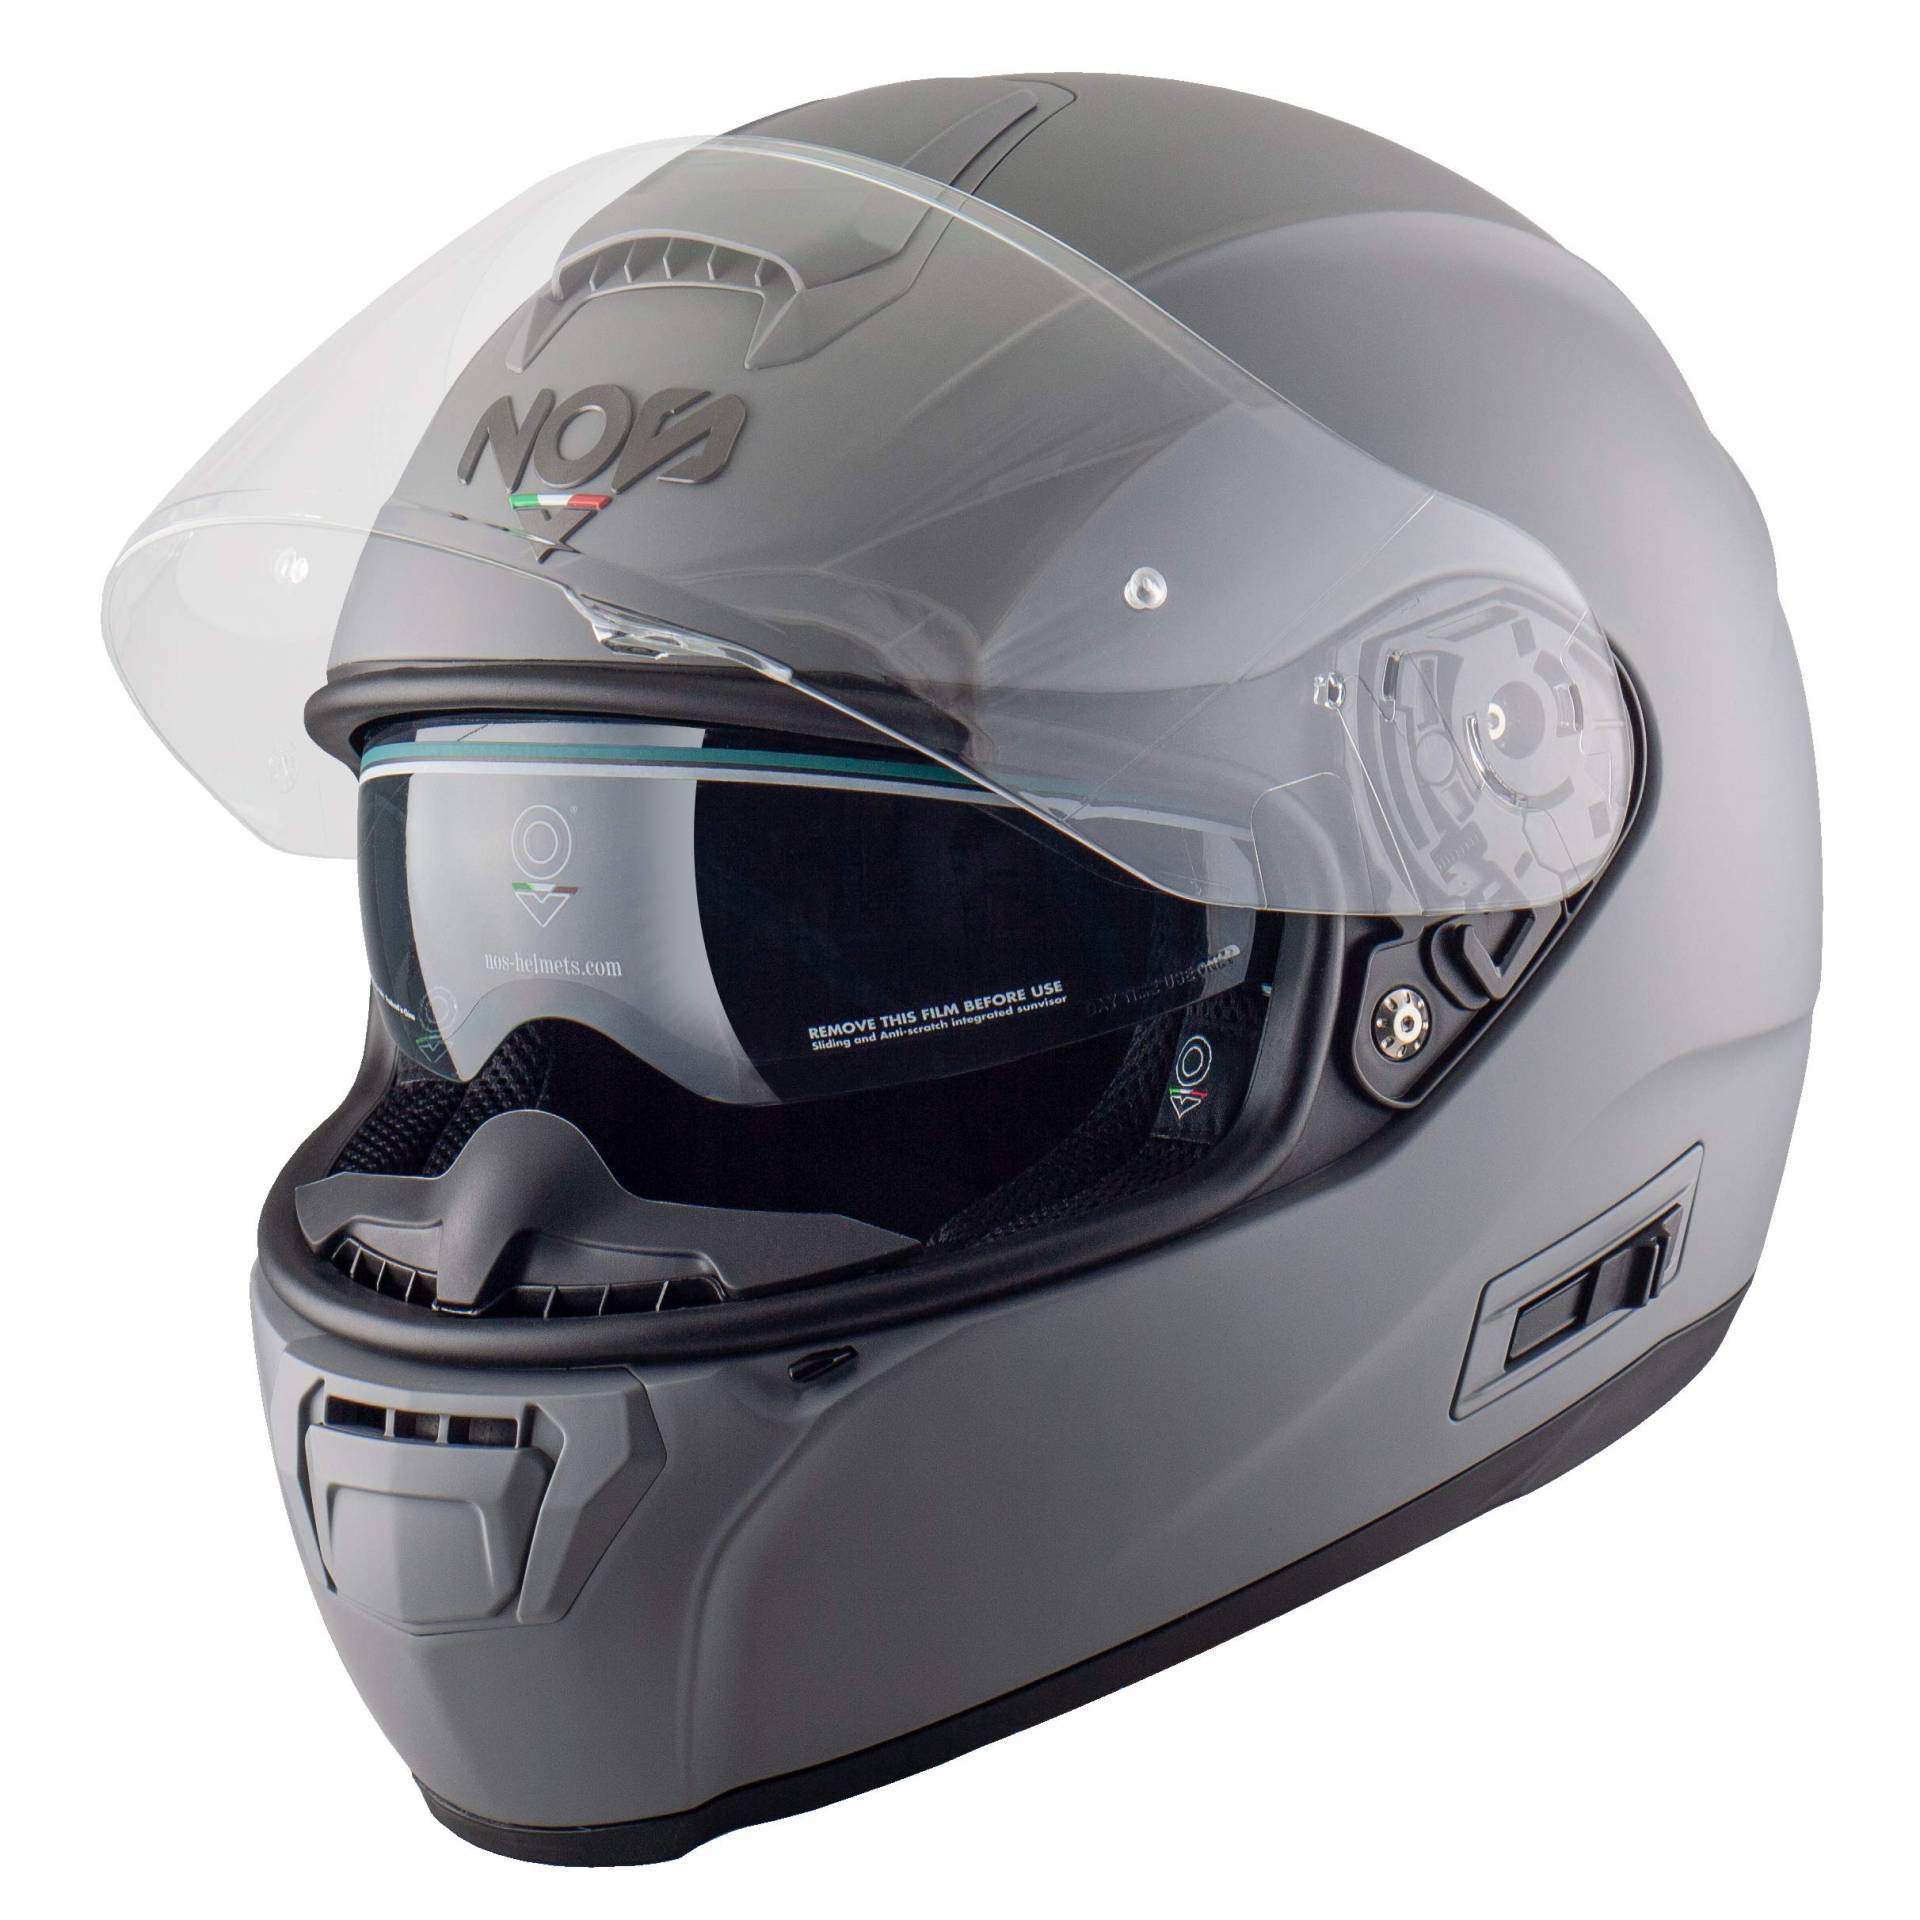 NOS Helmets Helm NS-6 M Seal Grey Matt von NOS NEW OWN STYLE